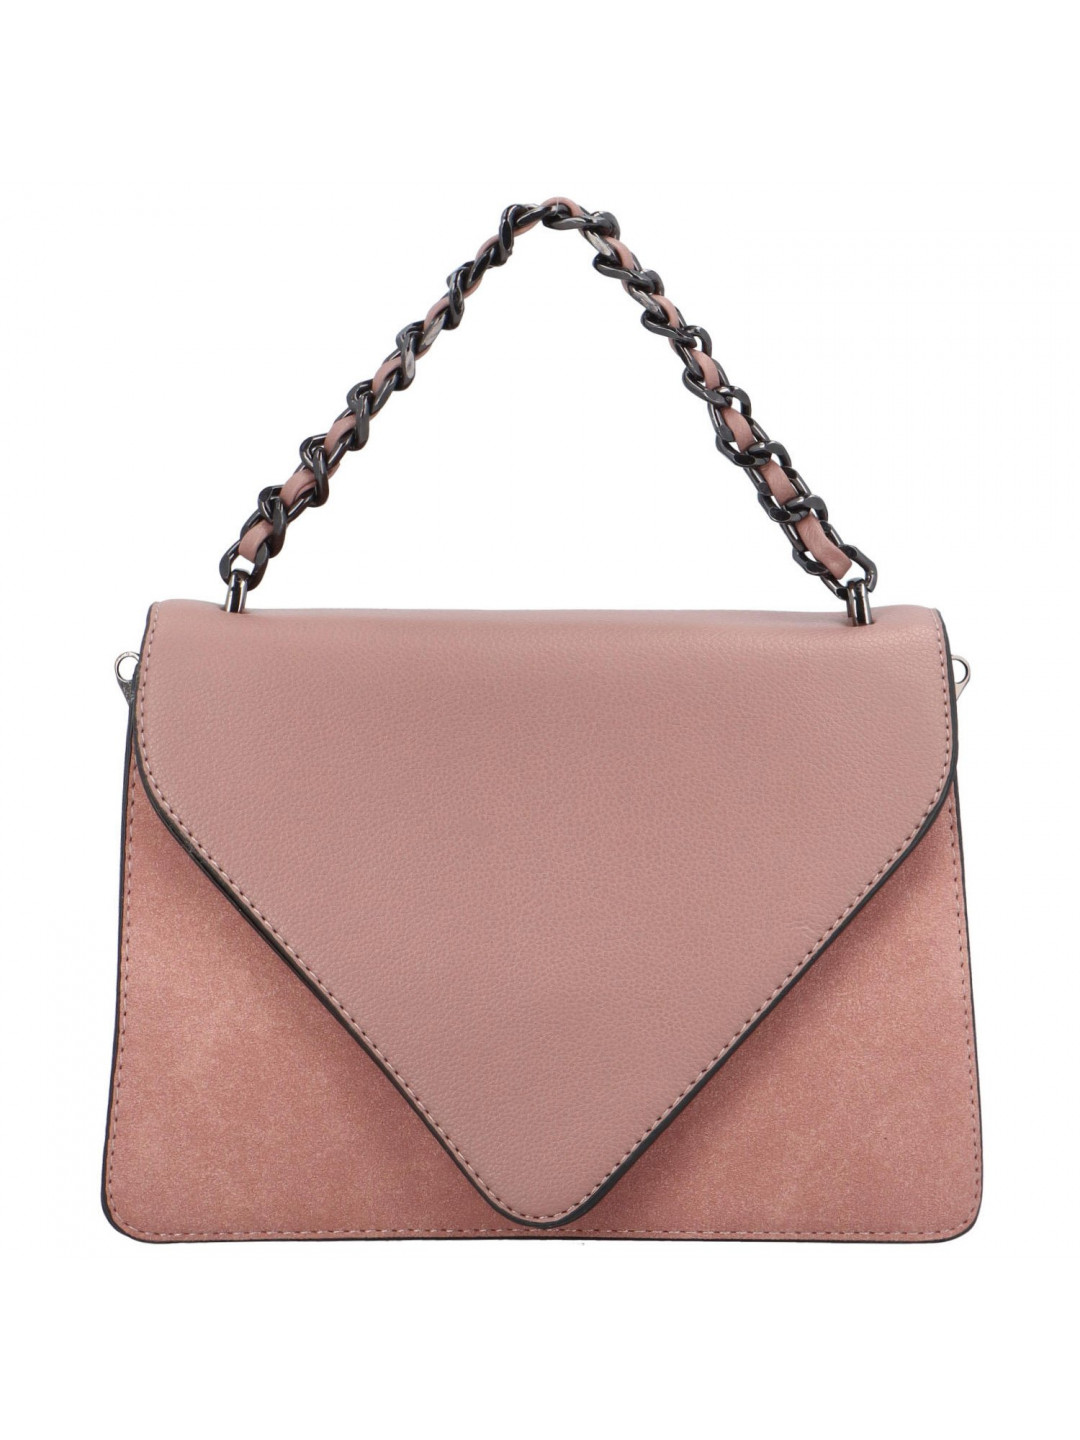 Luxusní dámská koženková kabelka Trinida světle růžová